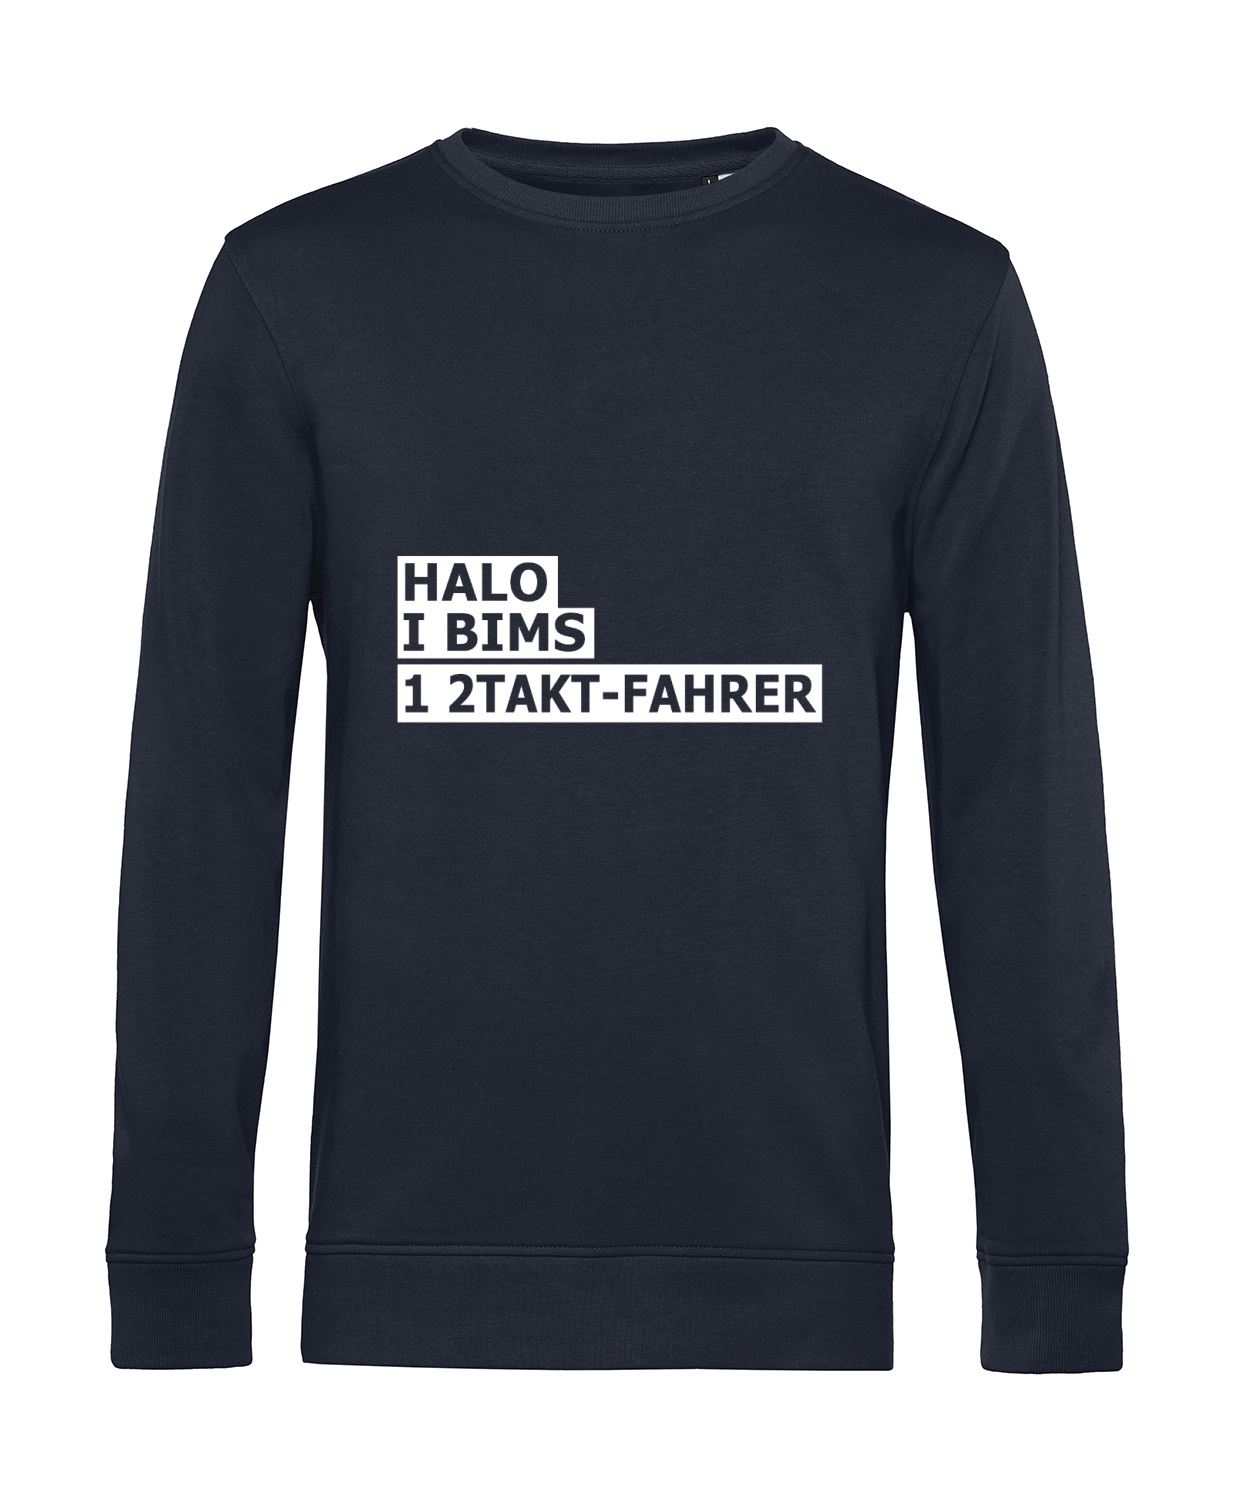 Nachhaltiges Sweatshirt Herren 2Takter - Halo I bims 1 2Takt-Fahrer